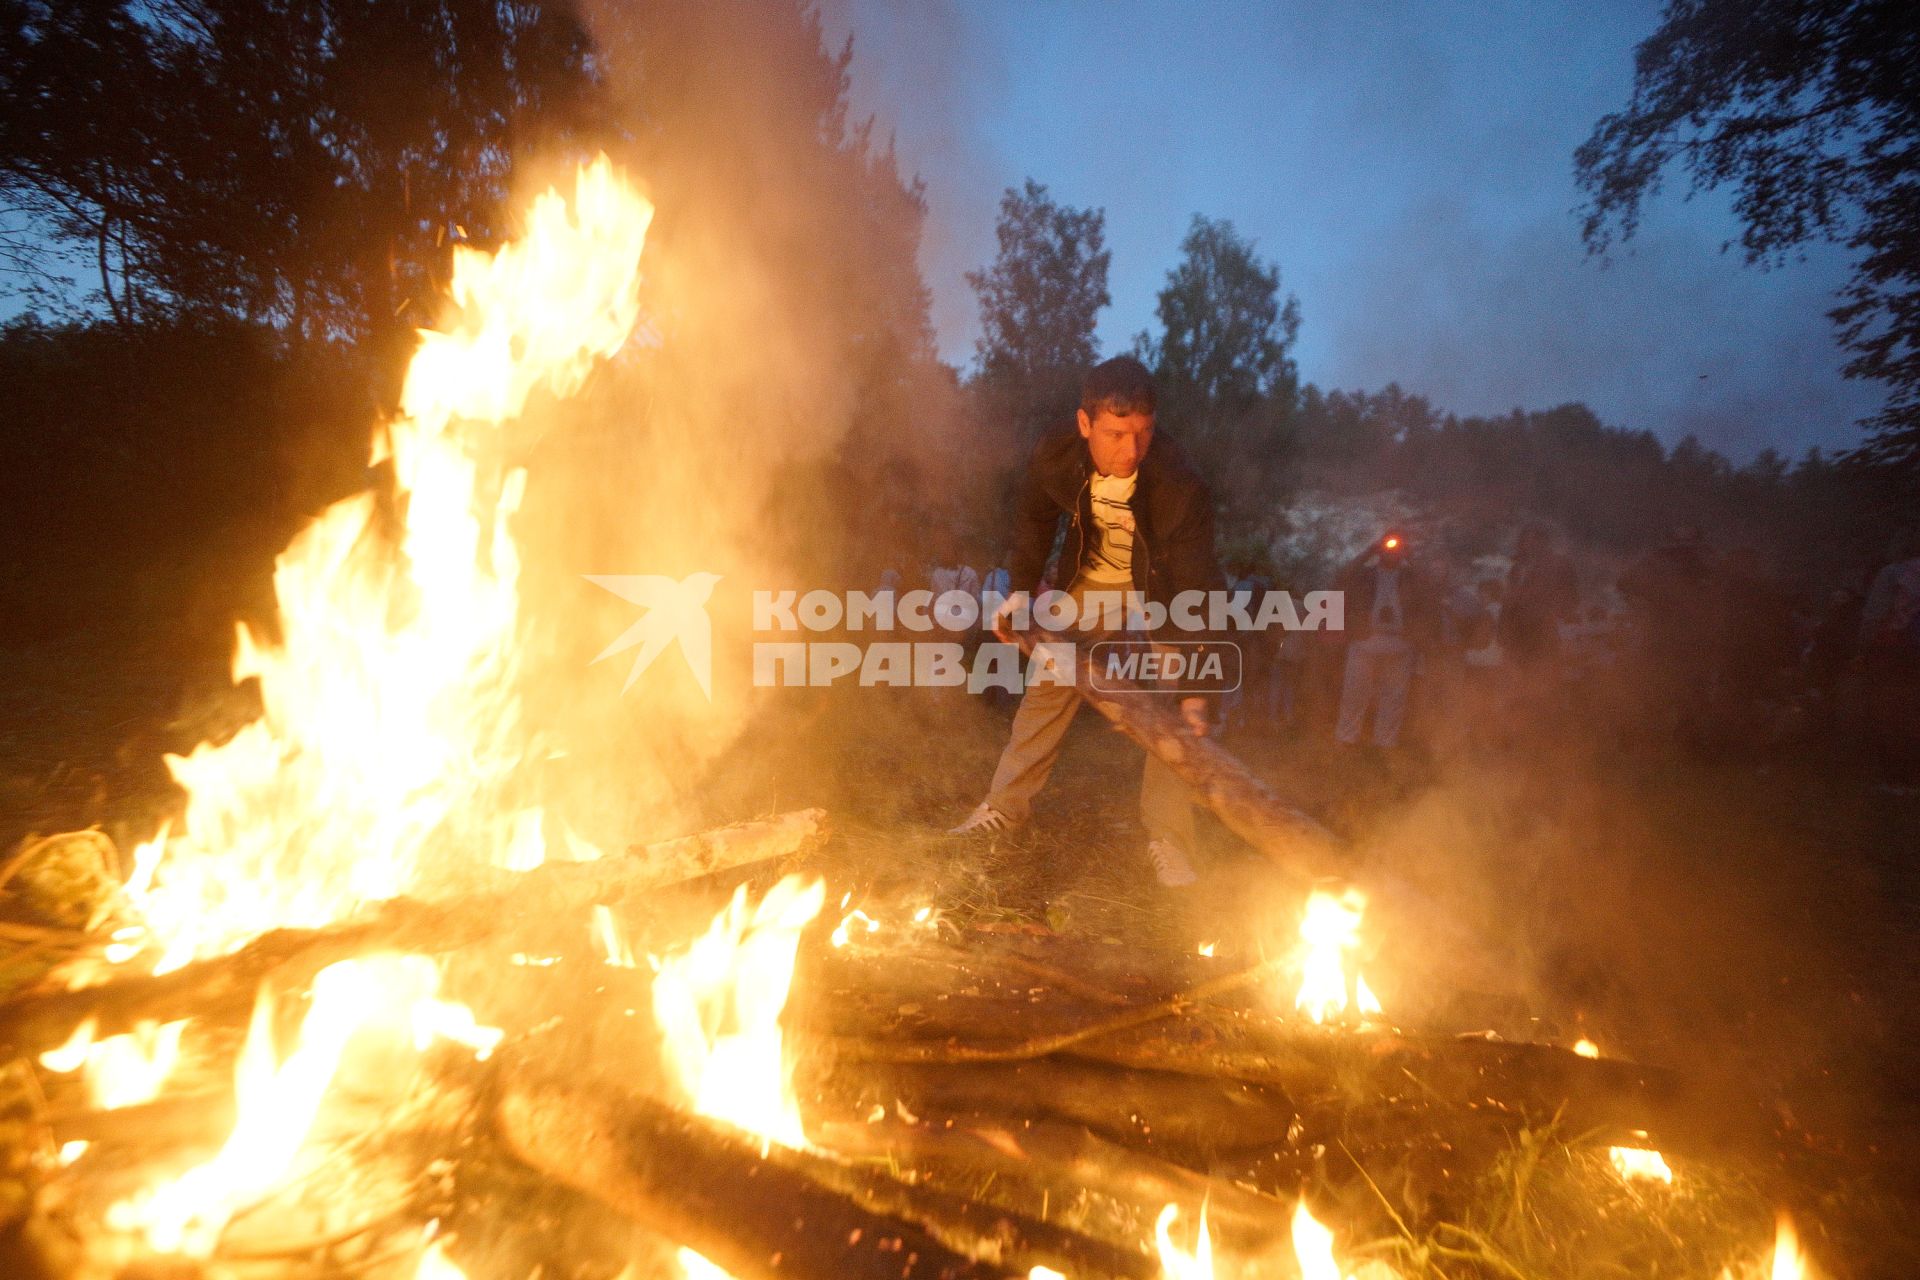 Участники празднования дня Ивана Купала во время обряда очищения огнем соединяют два больших костра